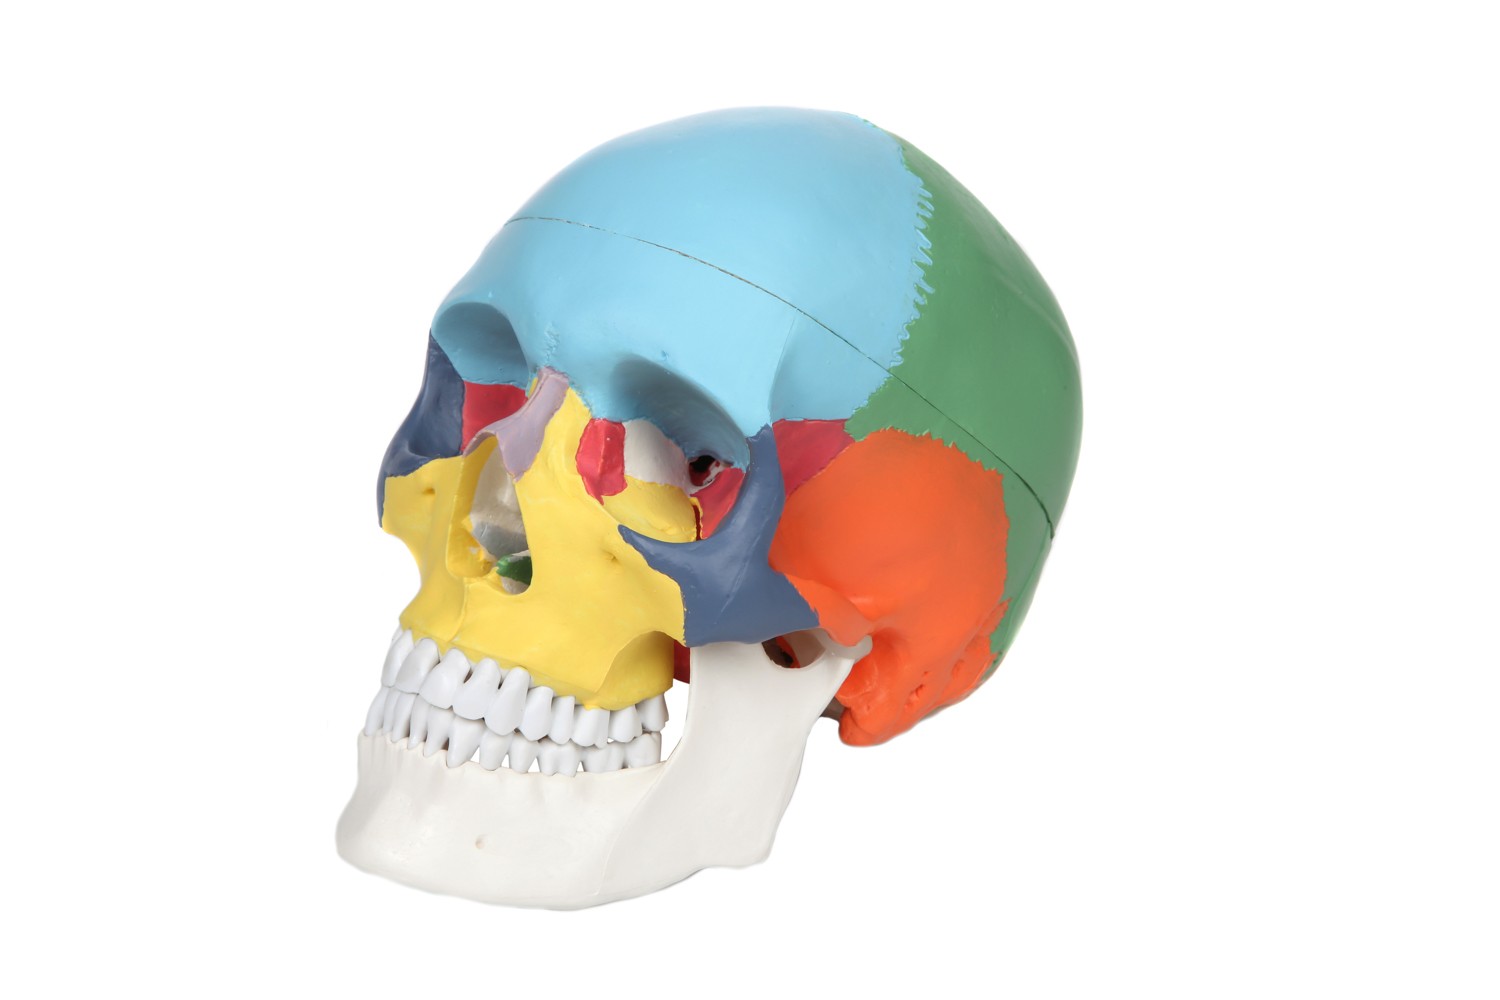 Анатомическая модель черепа человека